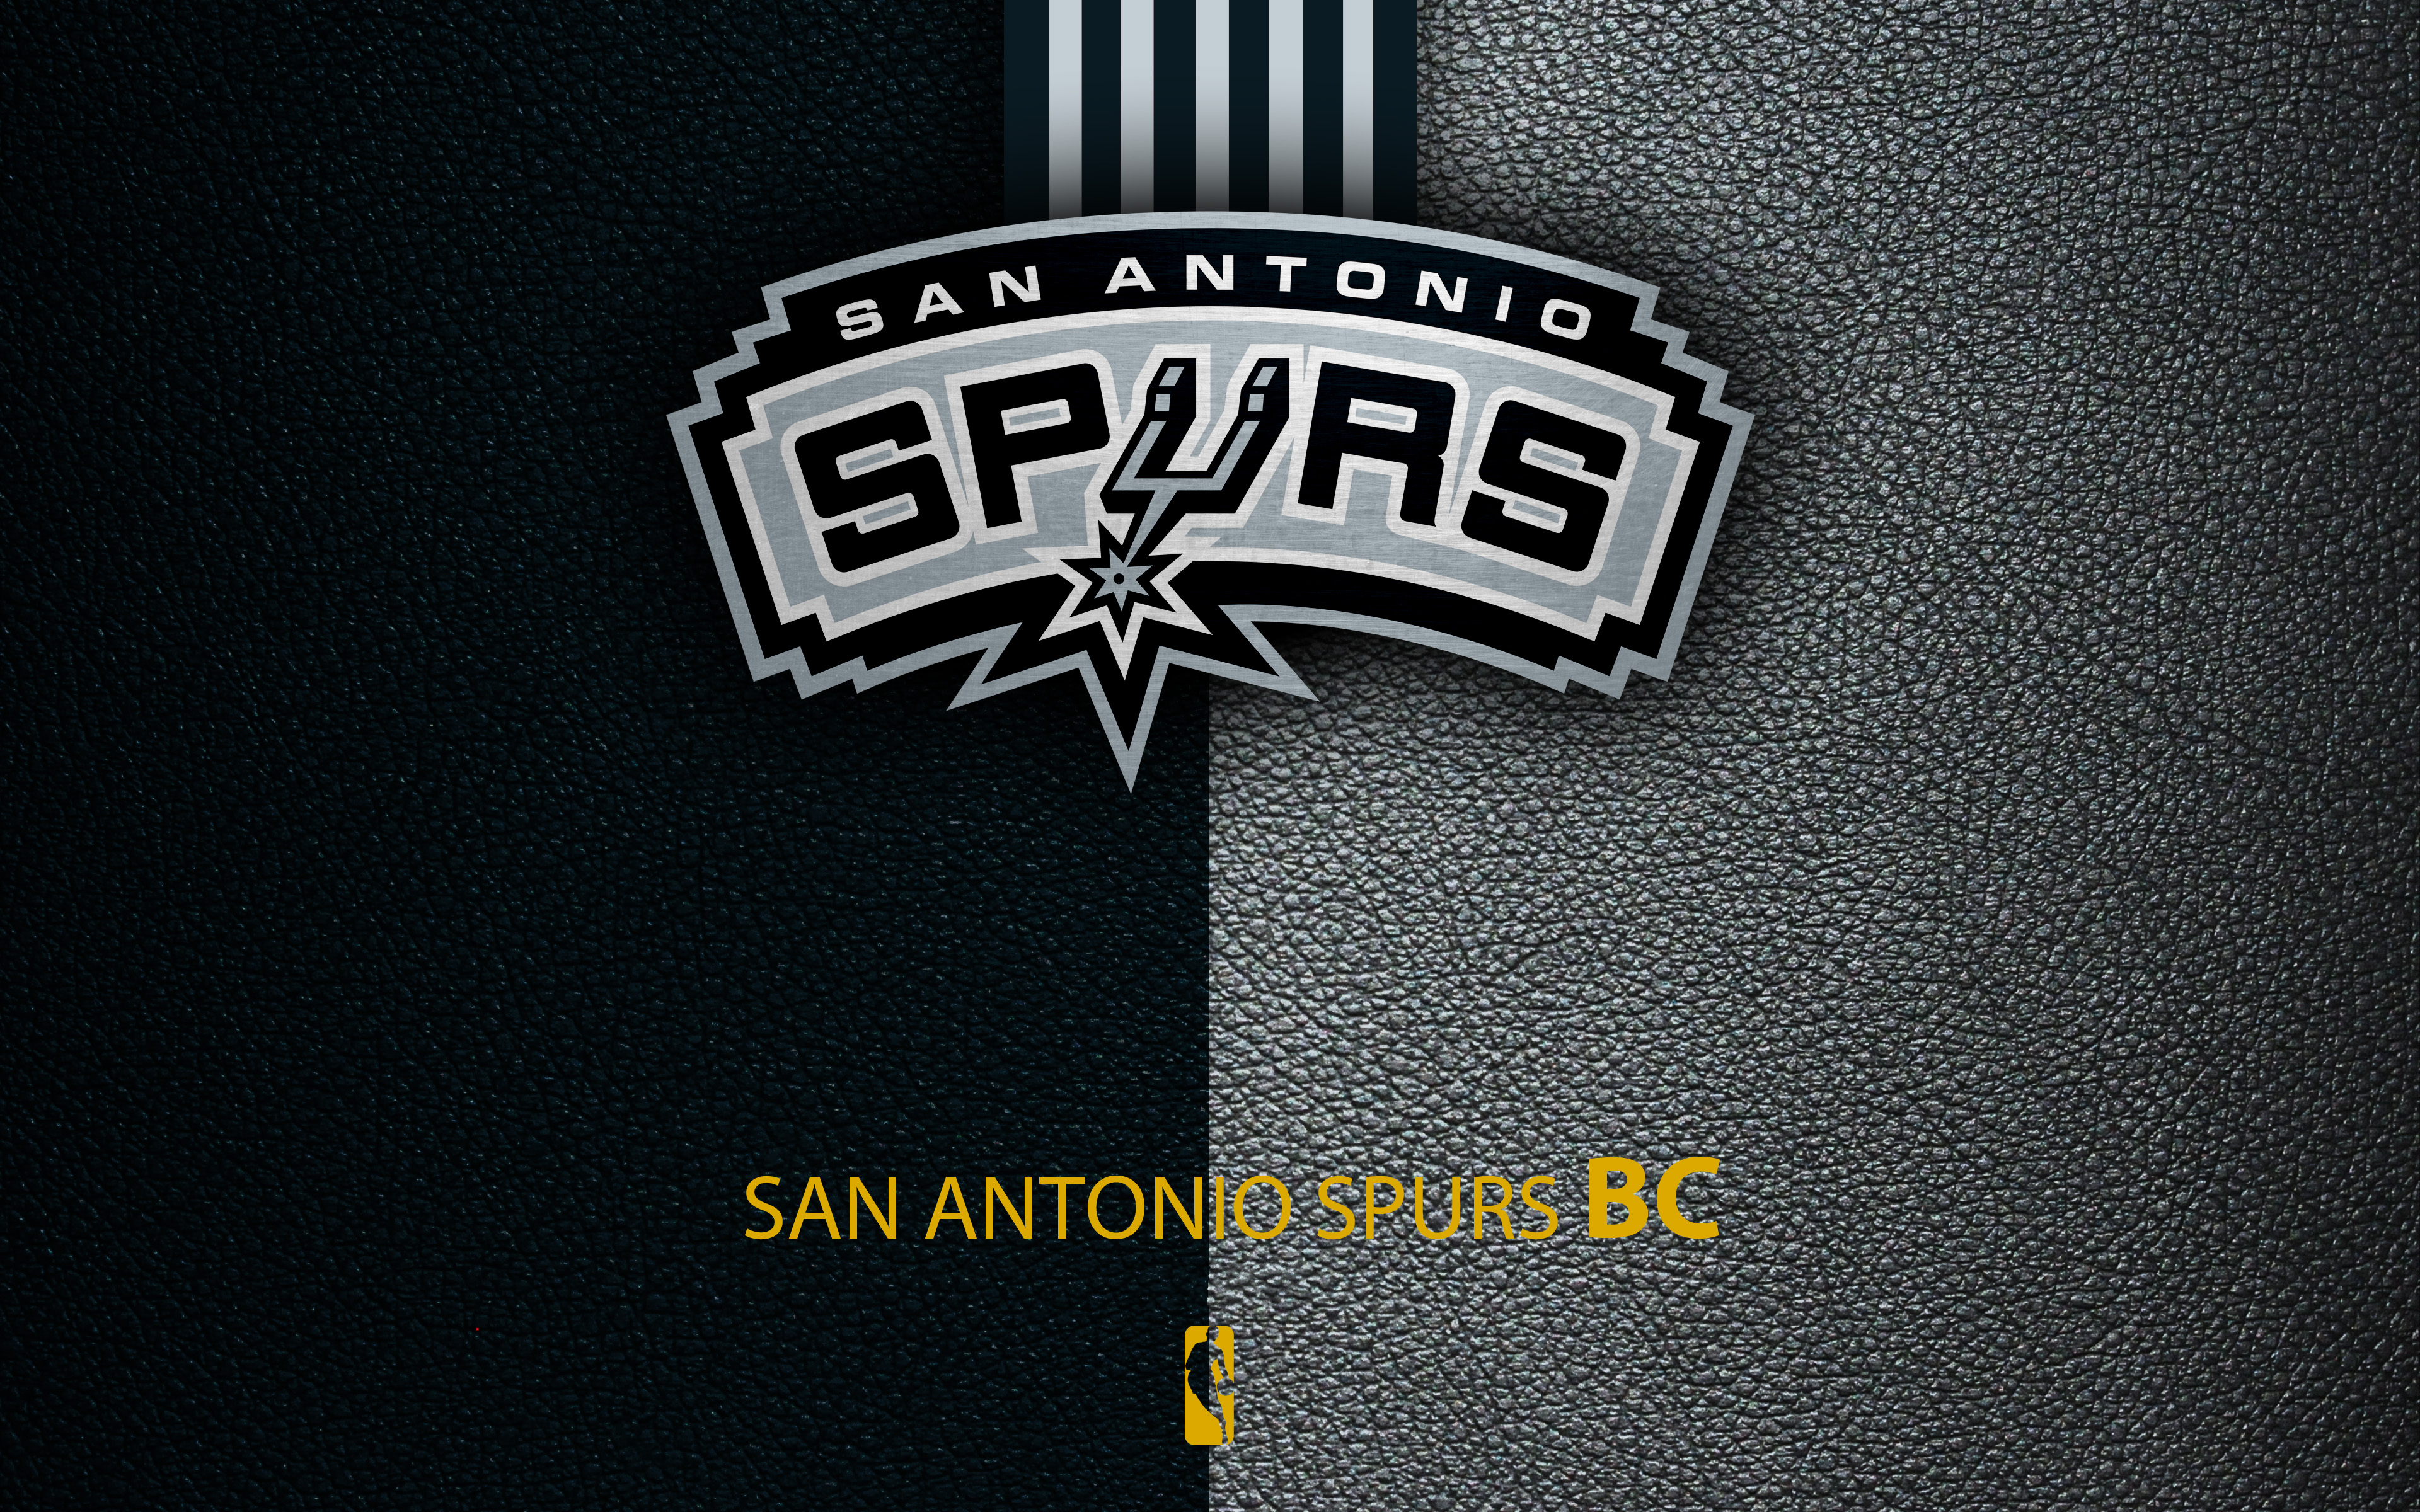 San Antonio Spurs Wallpaper live HD 2018 APK voor Android Download